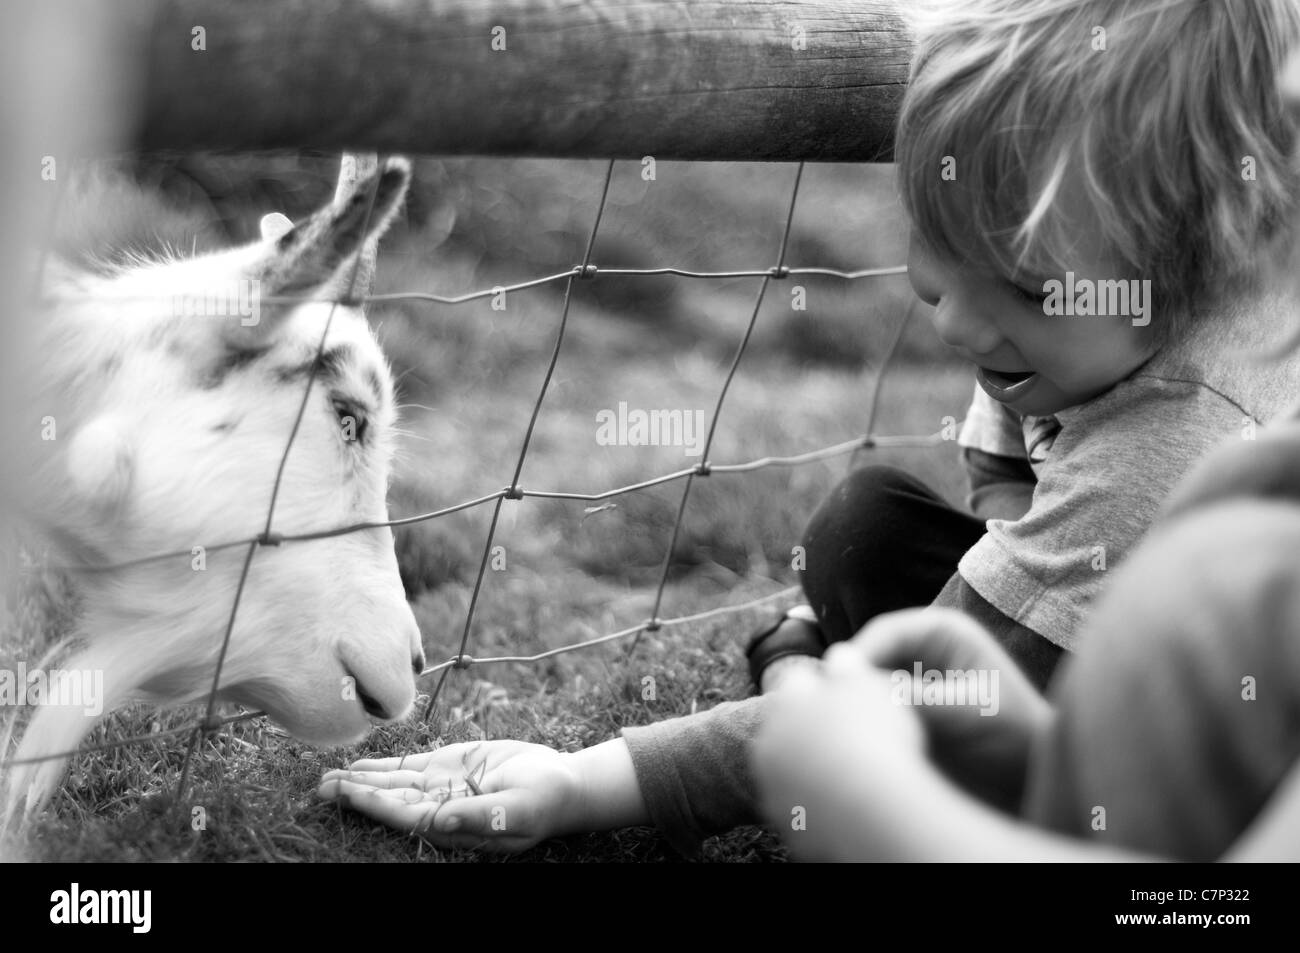 Un jeune garçon se nourrir une chèvre à travers une clôture. Enfant heureux et souriant Banque D'Images